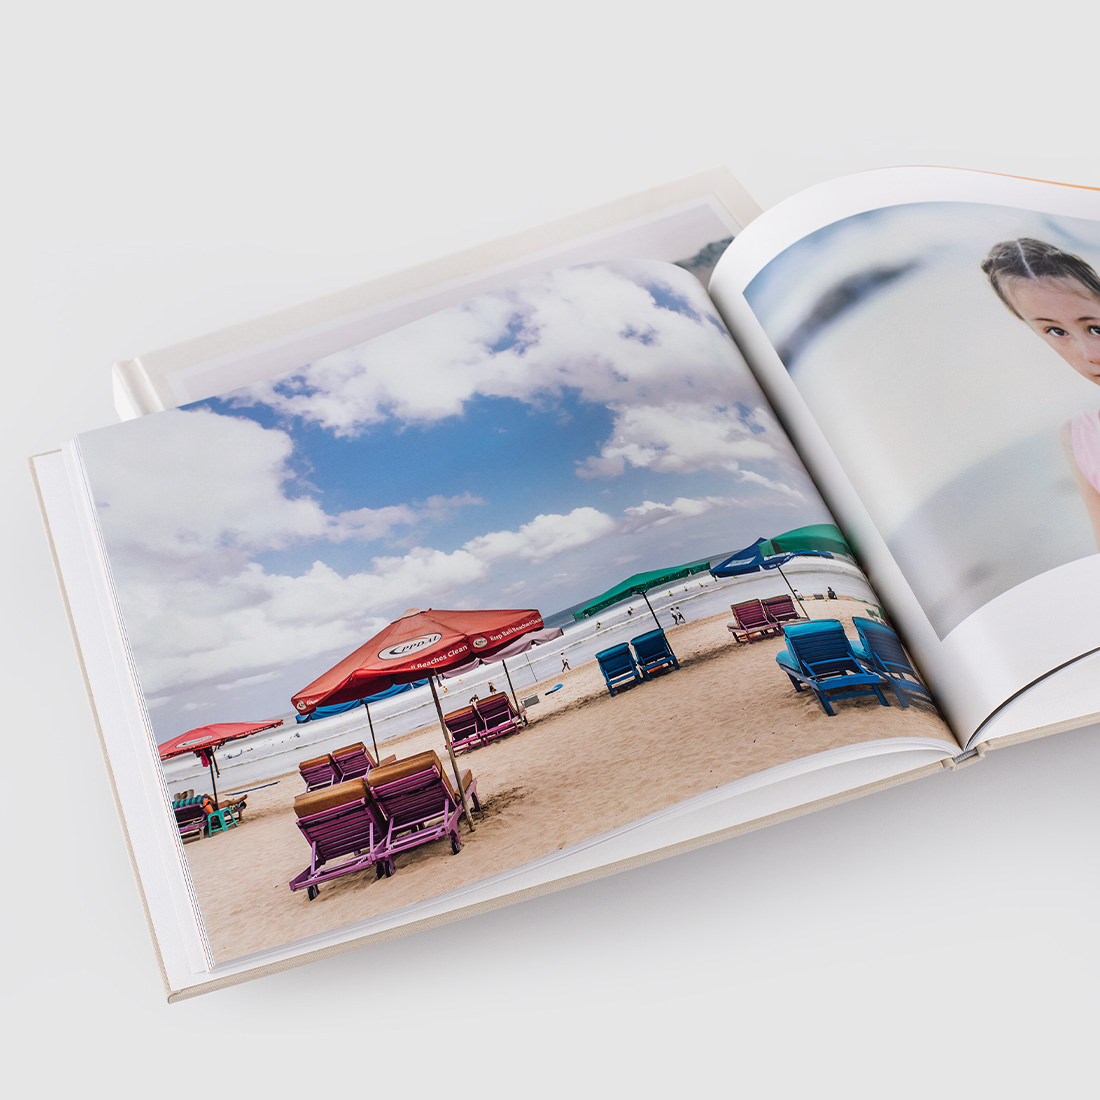 Fotolibro abierto con imagenes de la playa.